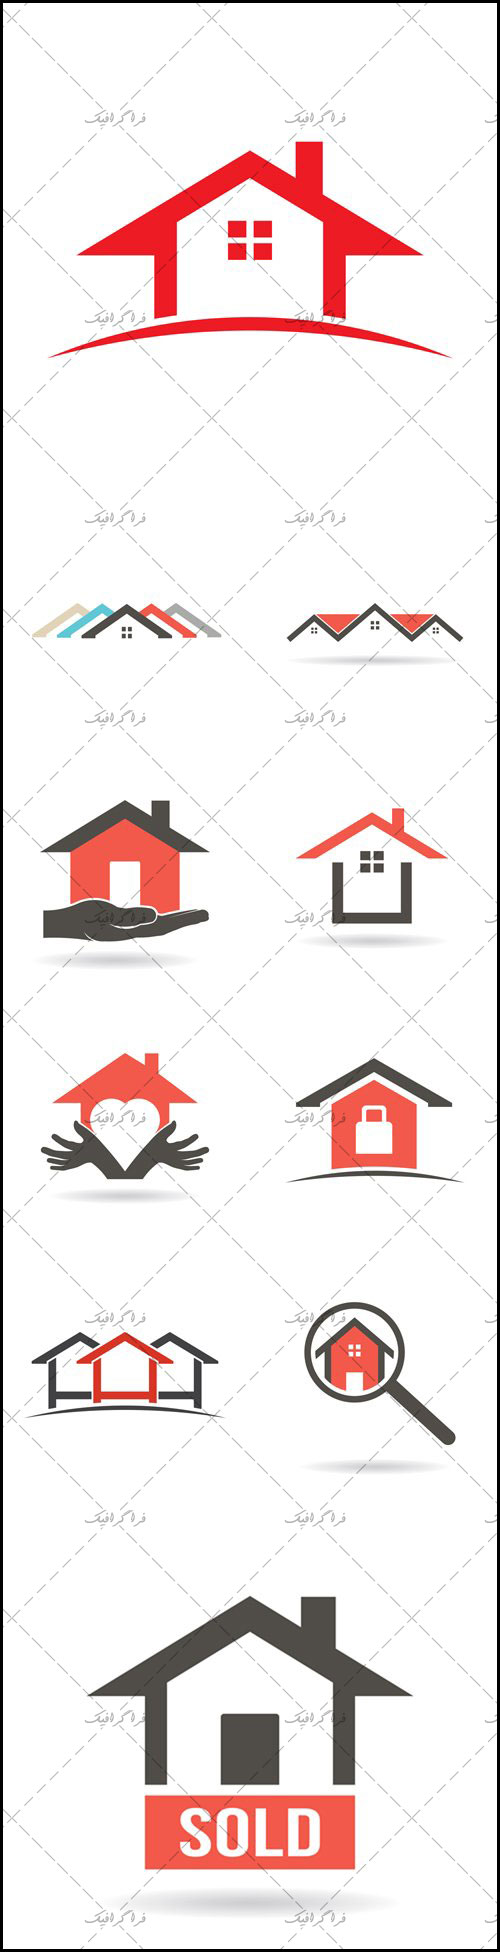 دانلود لوگو های خانه - House Logos - شماره 2